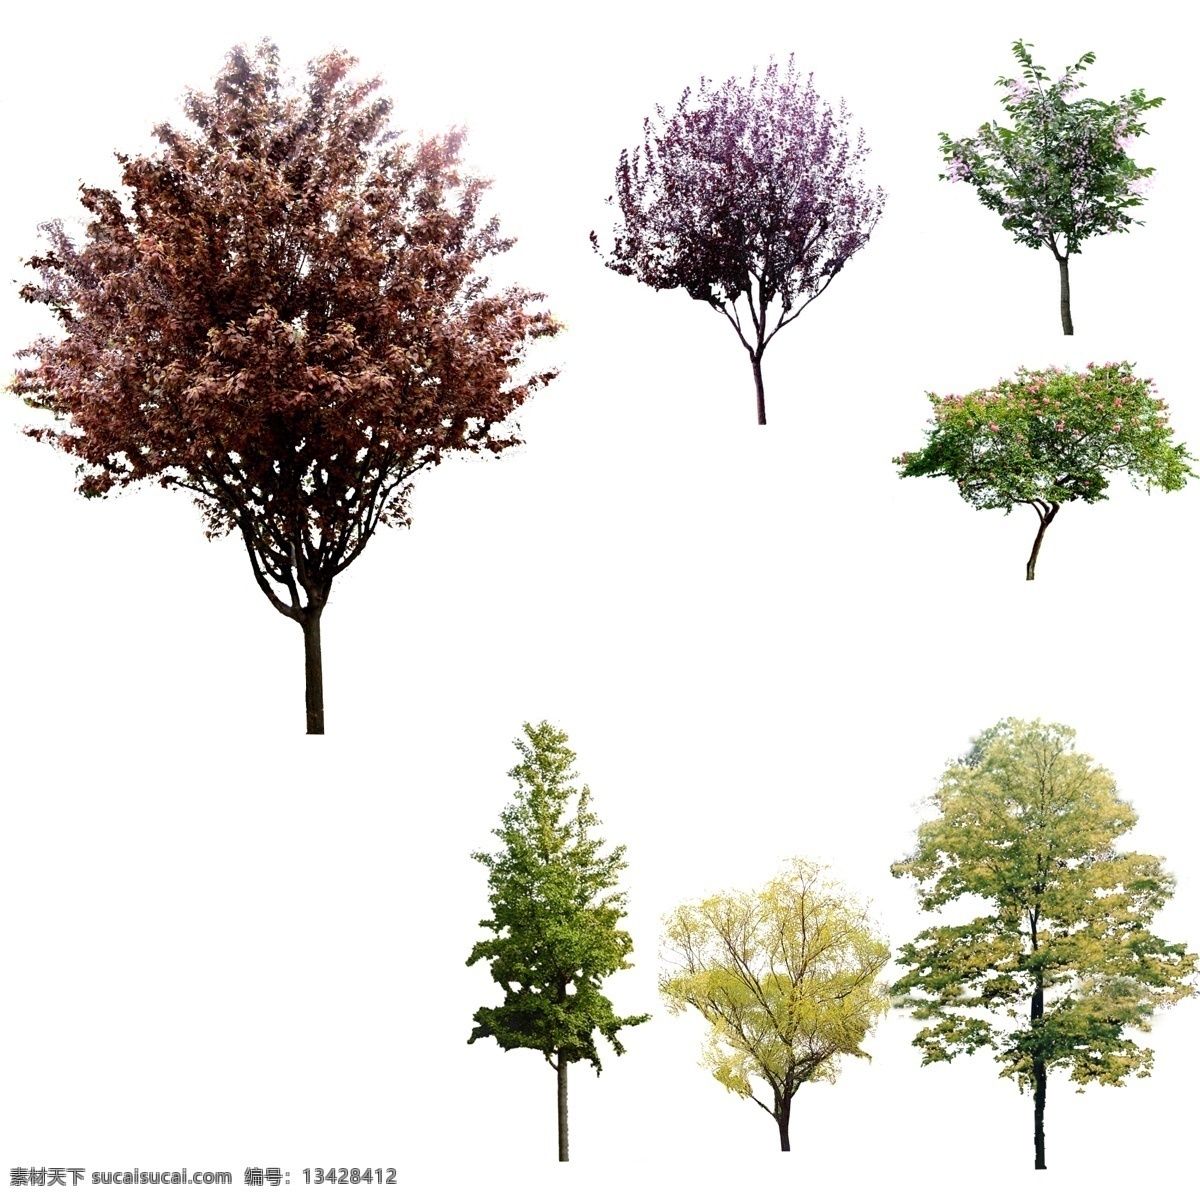 小乔木 绿化树木 常绿树木 景观树 景观后期 景观绿化 后期配景 绿化景观 环境设计 园林设计